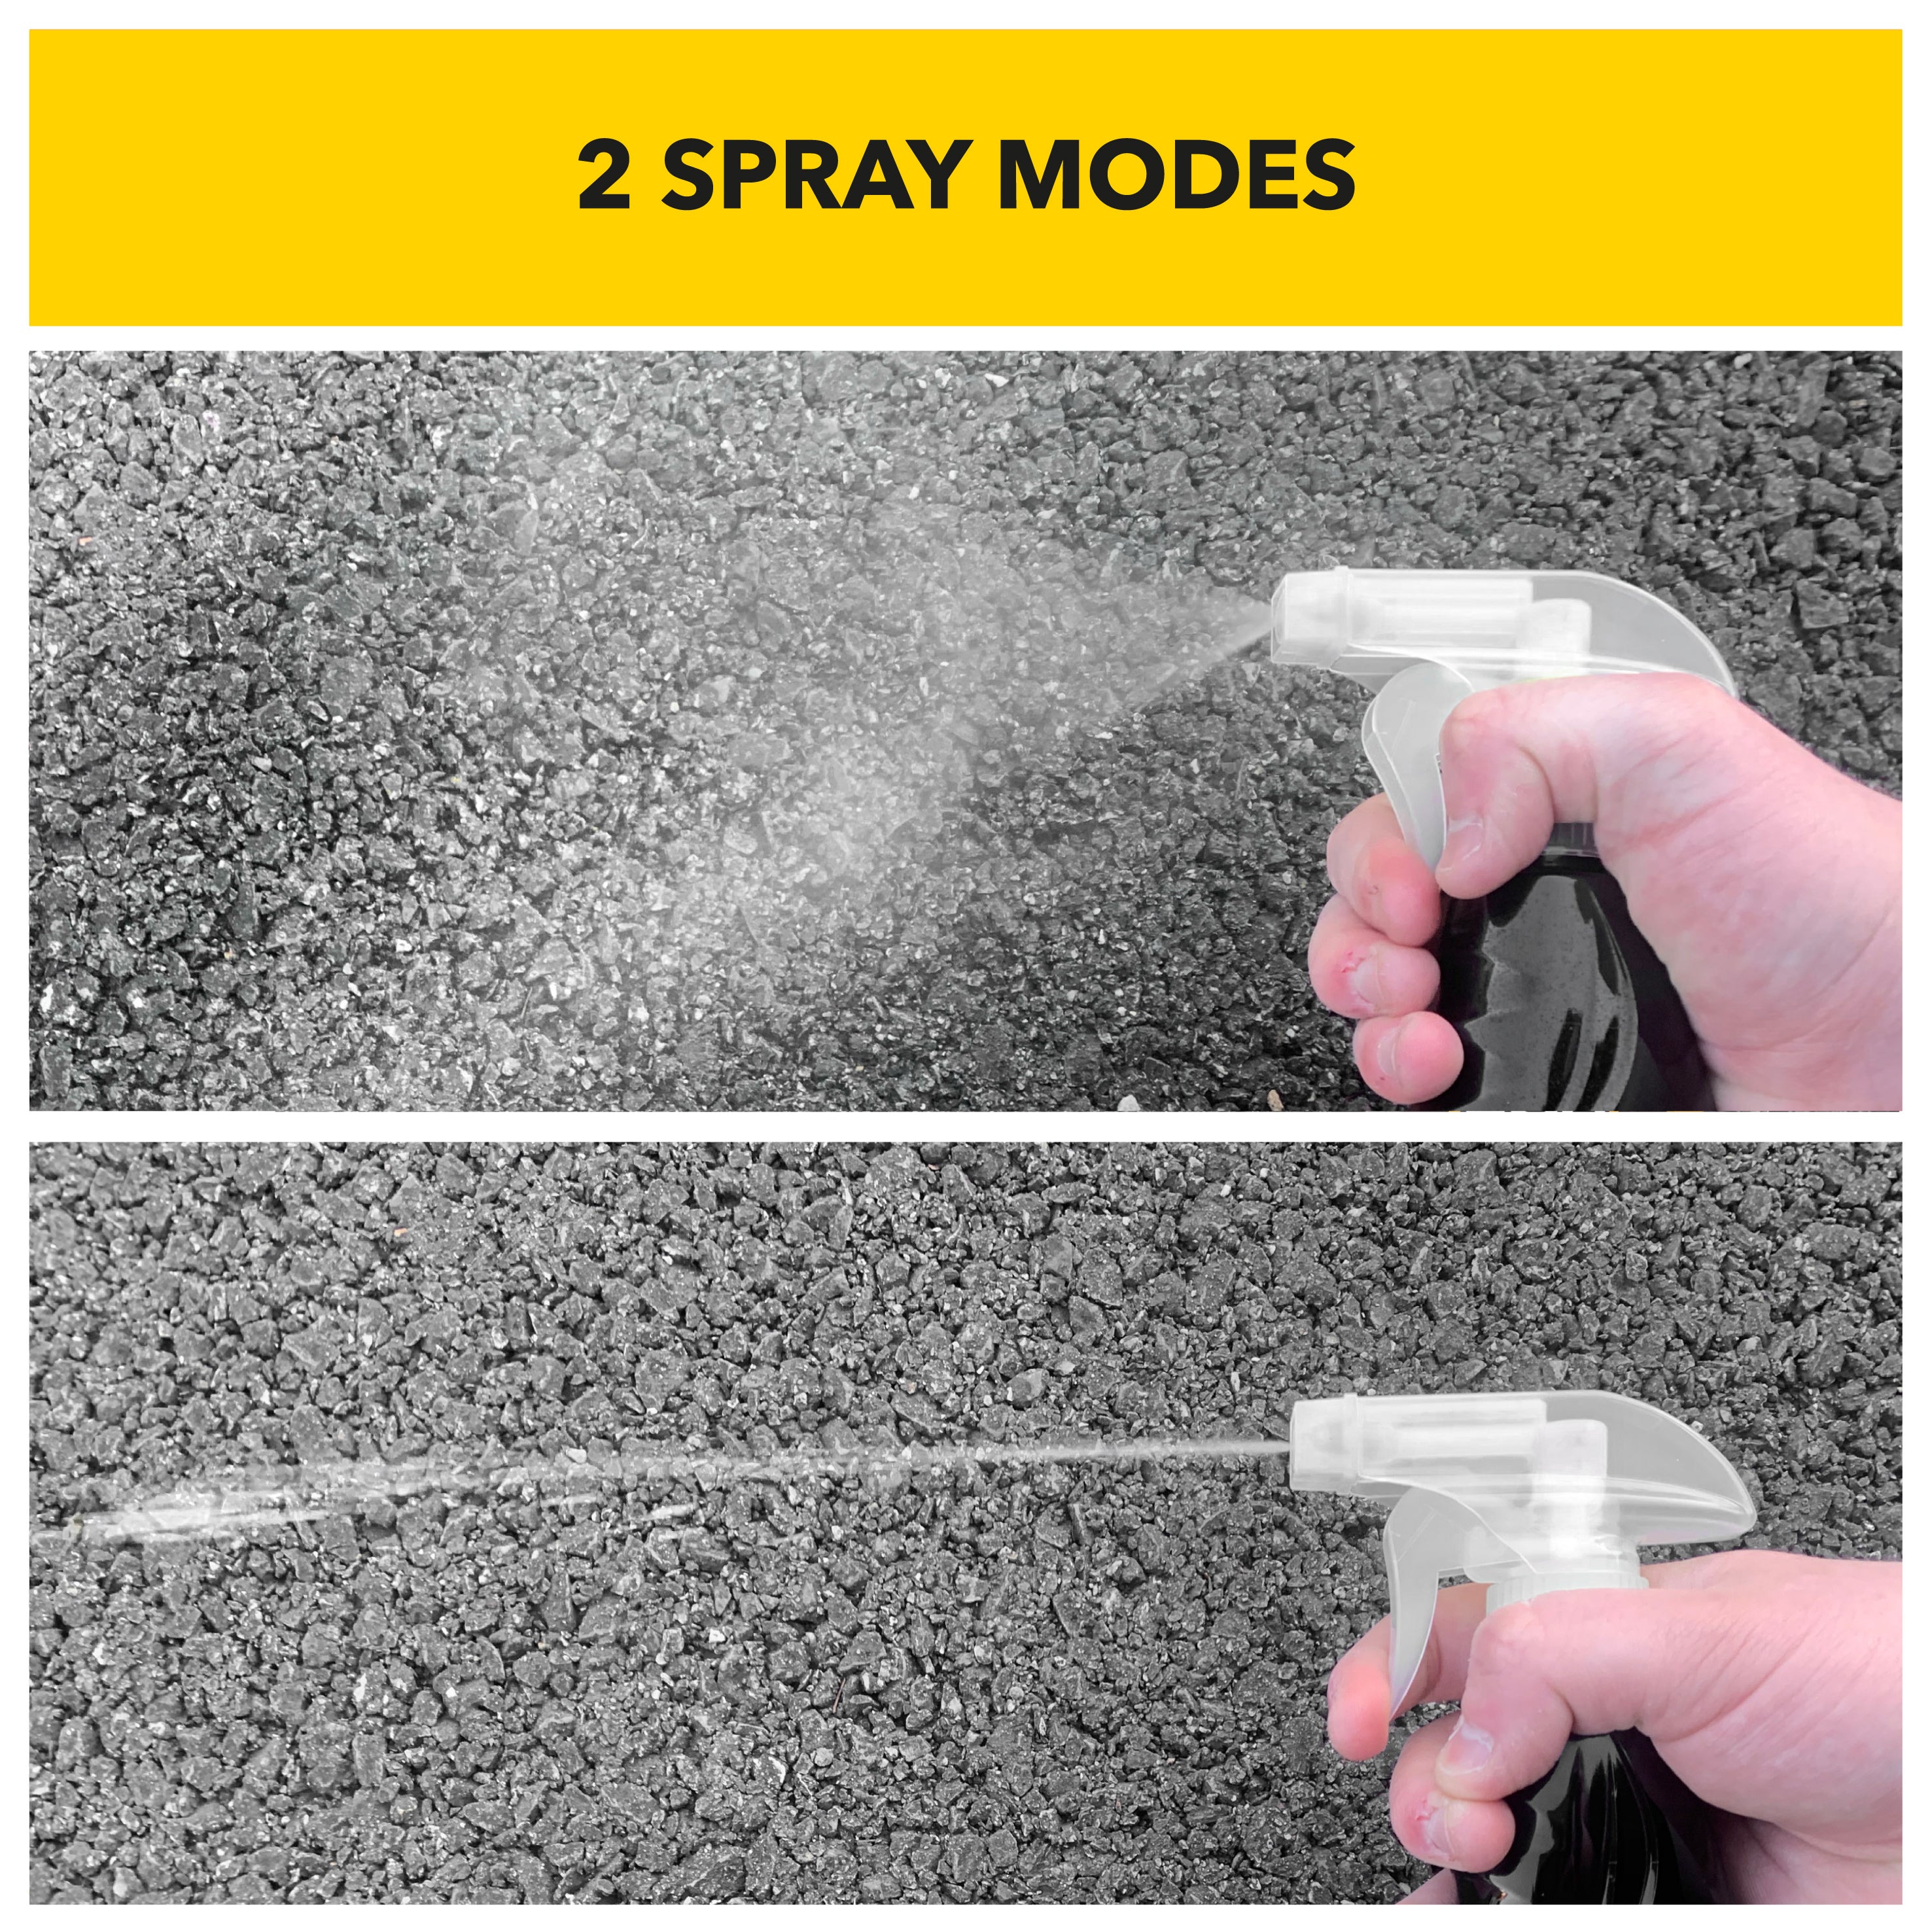 2 spray modes